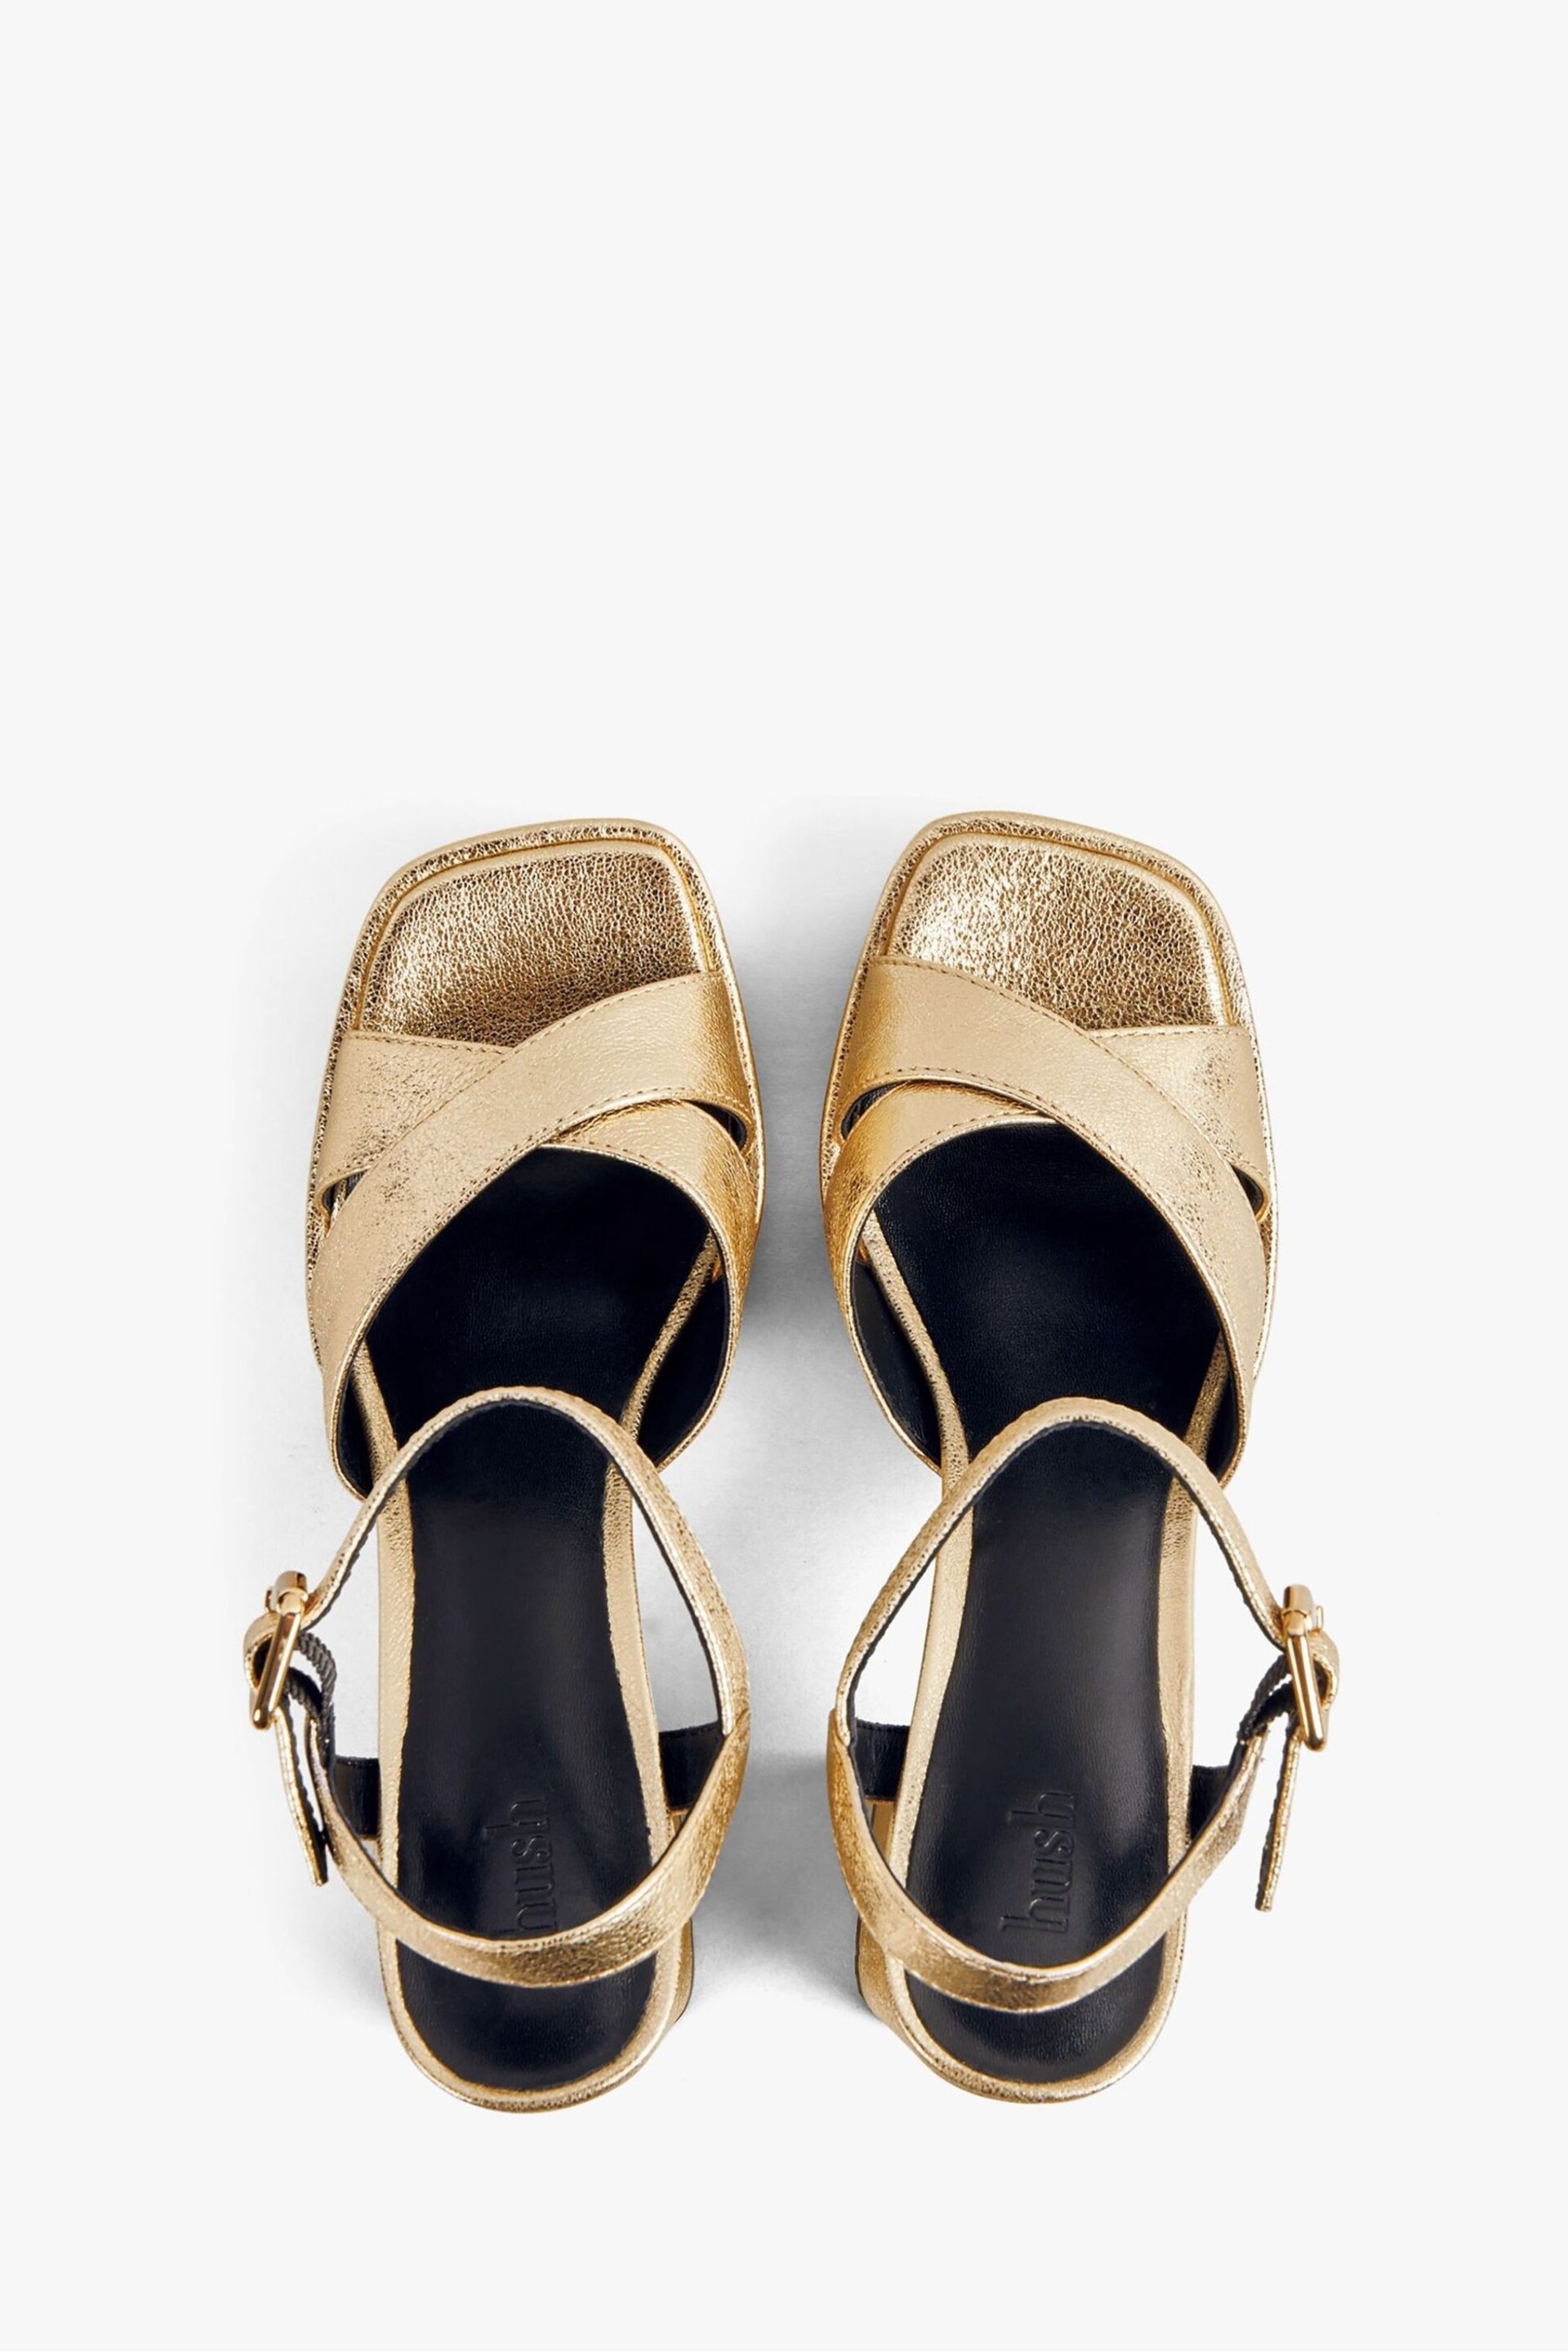 Hush Gold Hayne Leather Platform Sandals - Image 4 of 5